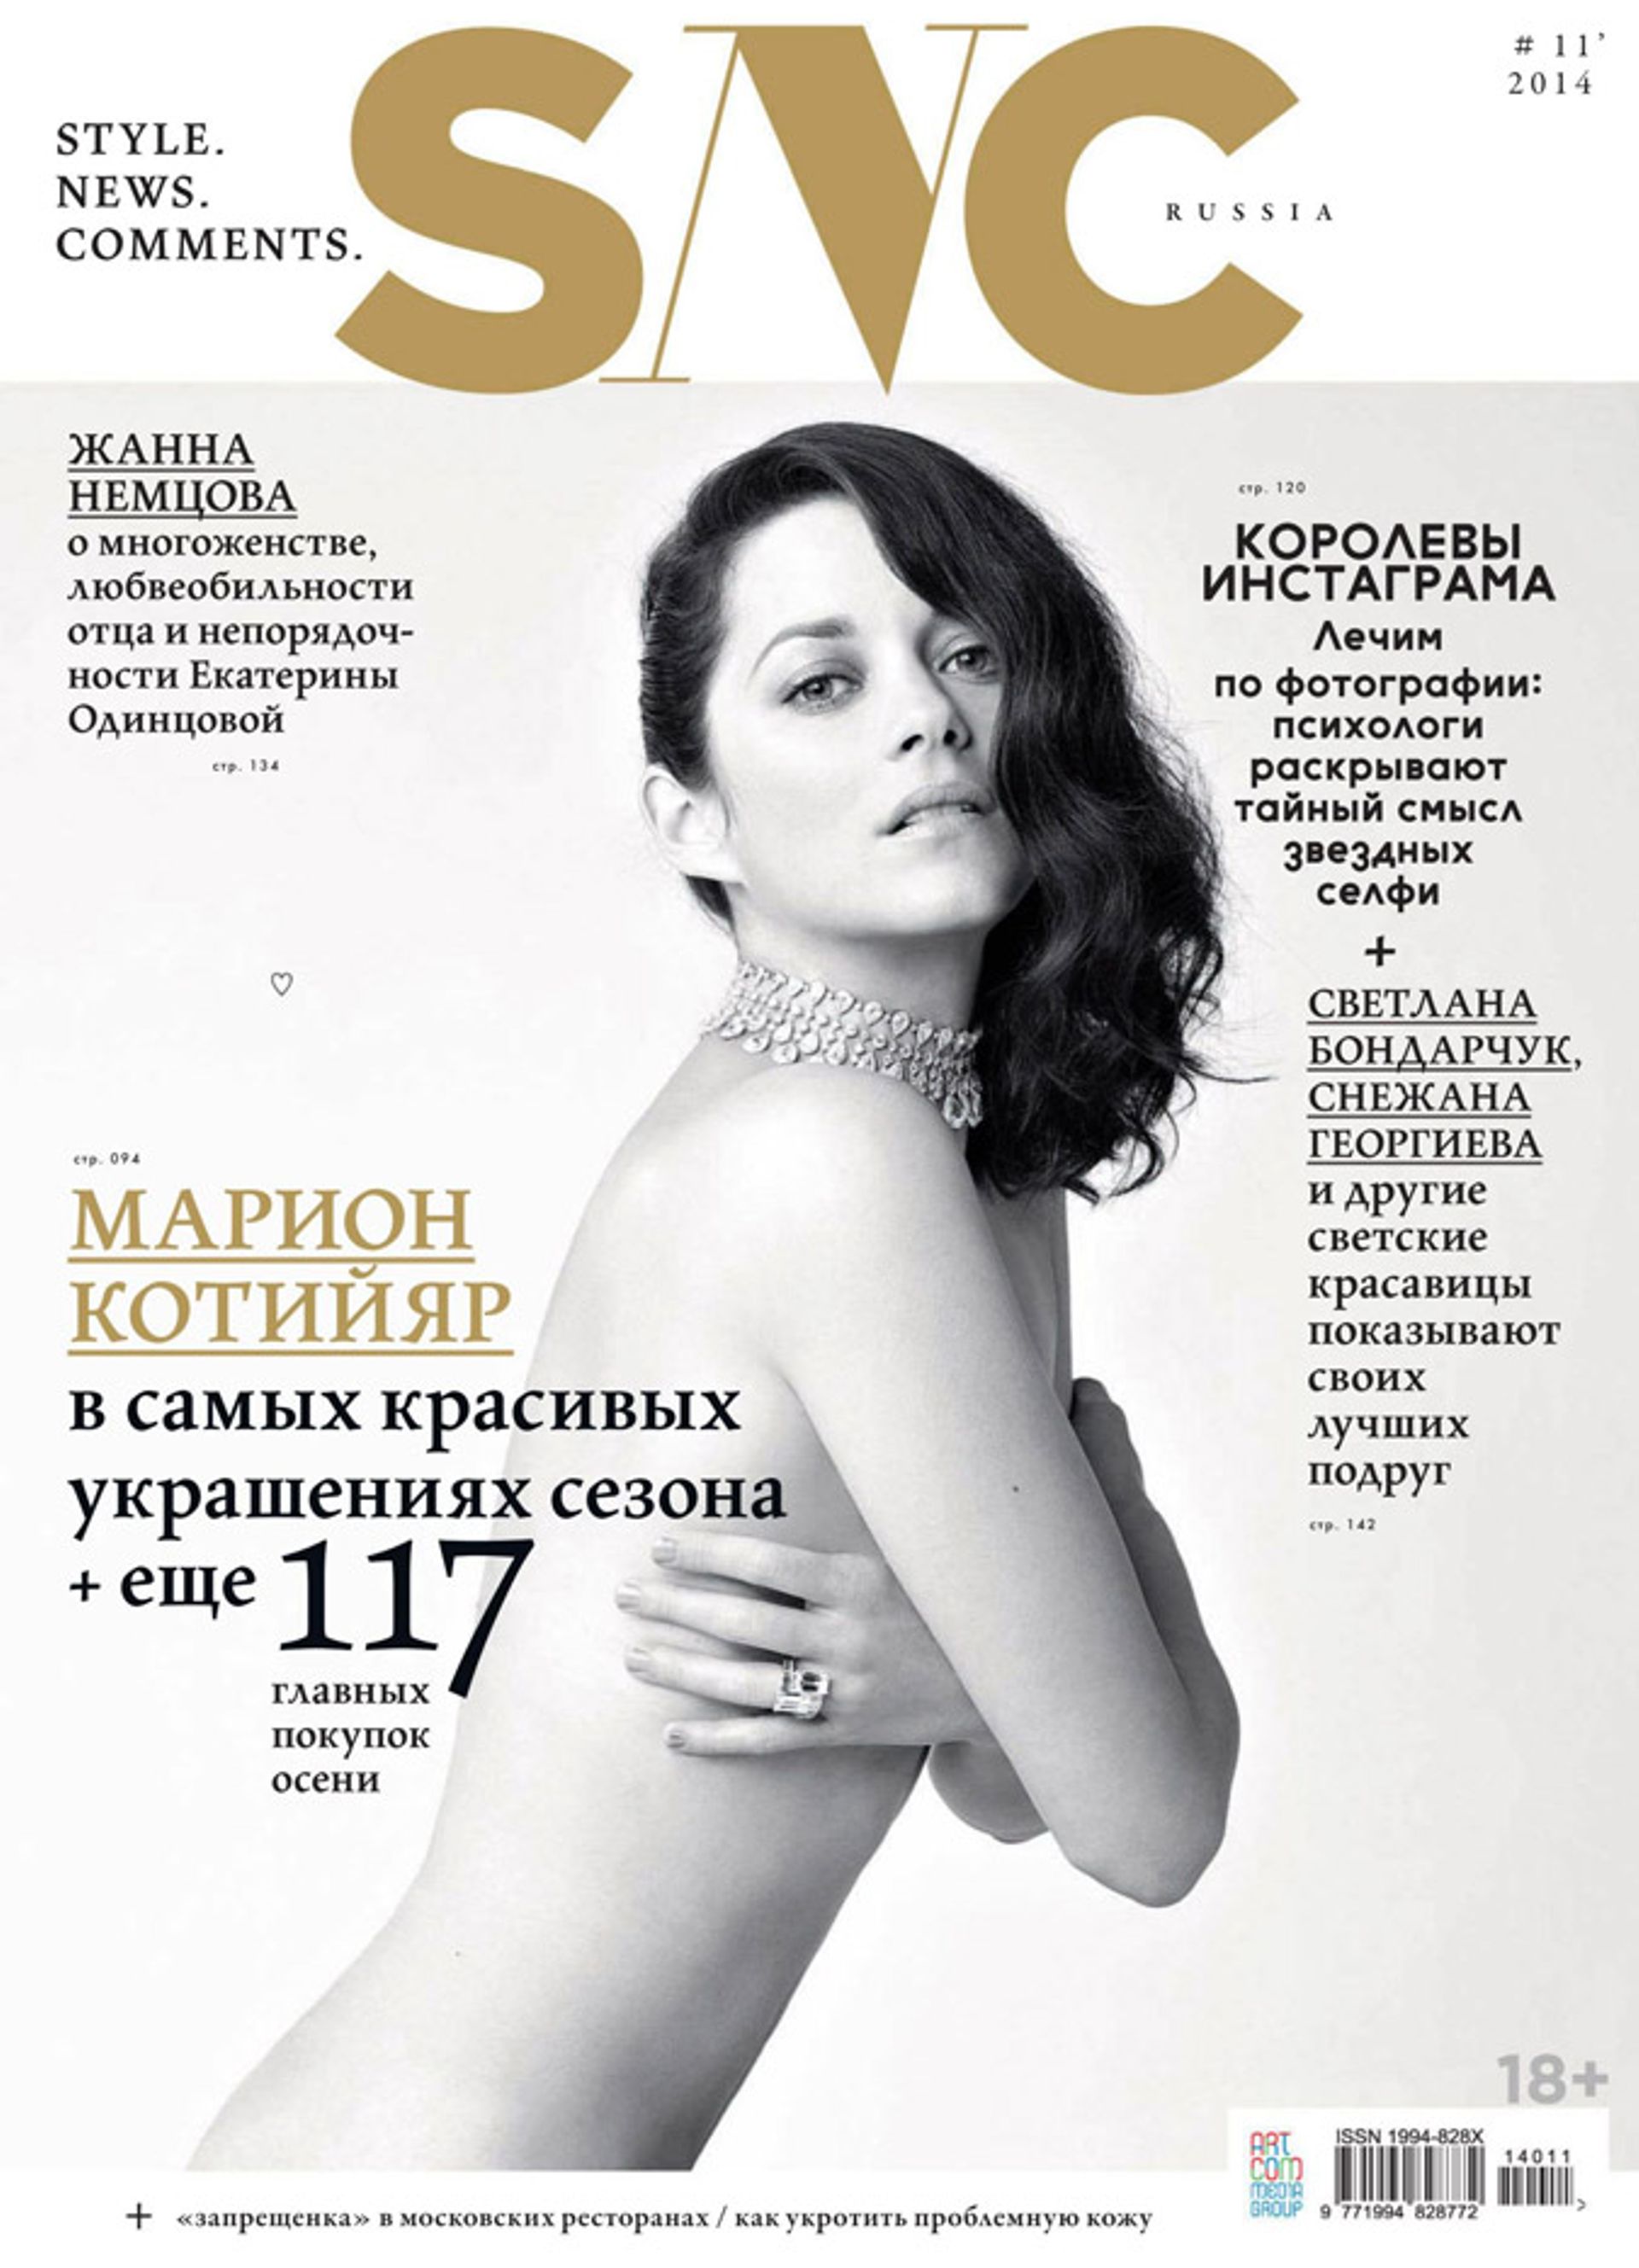 Marion Cotillard, toute nue mais chaste quand même pour un magazine russe